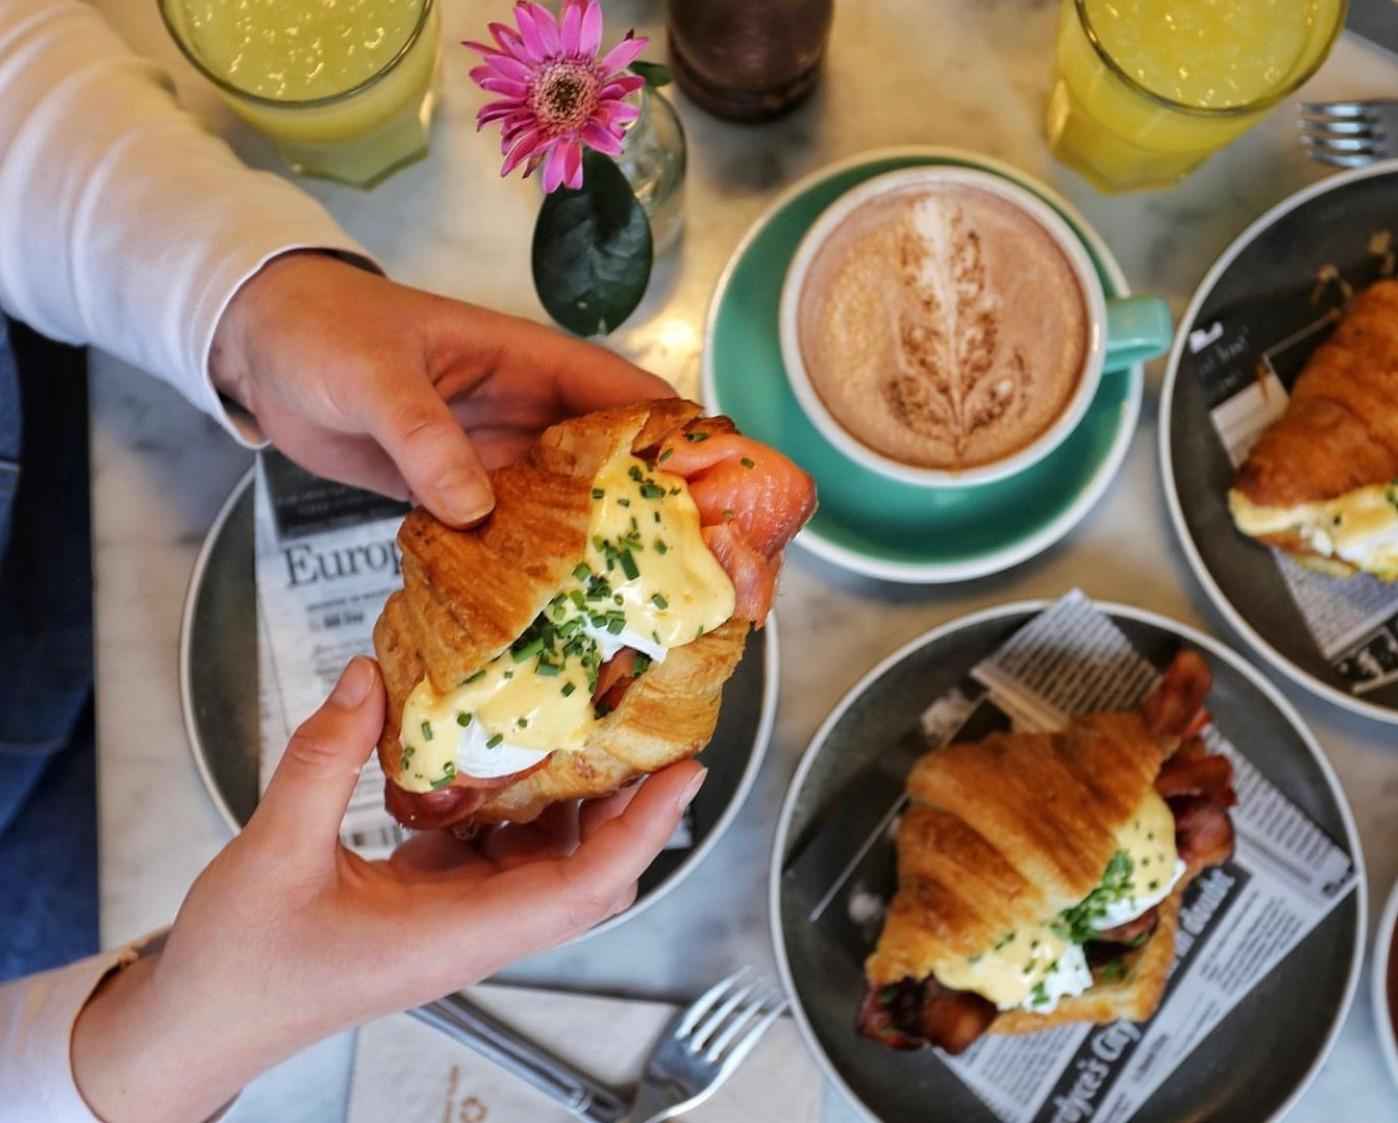 Een persoon houdt een croissant Eggs Benedict vast. Op de tafel staan borden met croissants, glazen met sap en een kopje cappuccino.